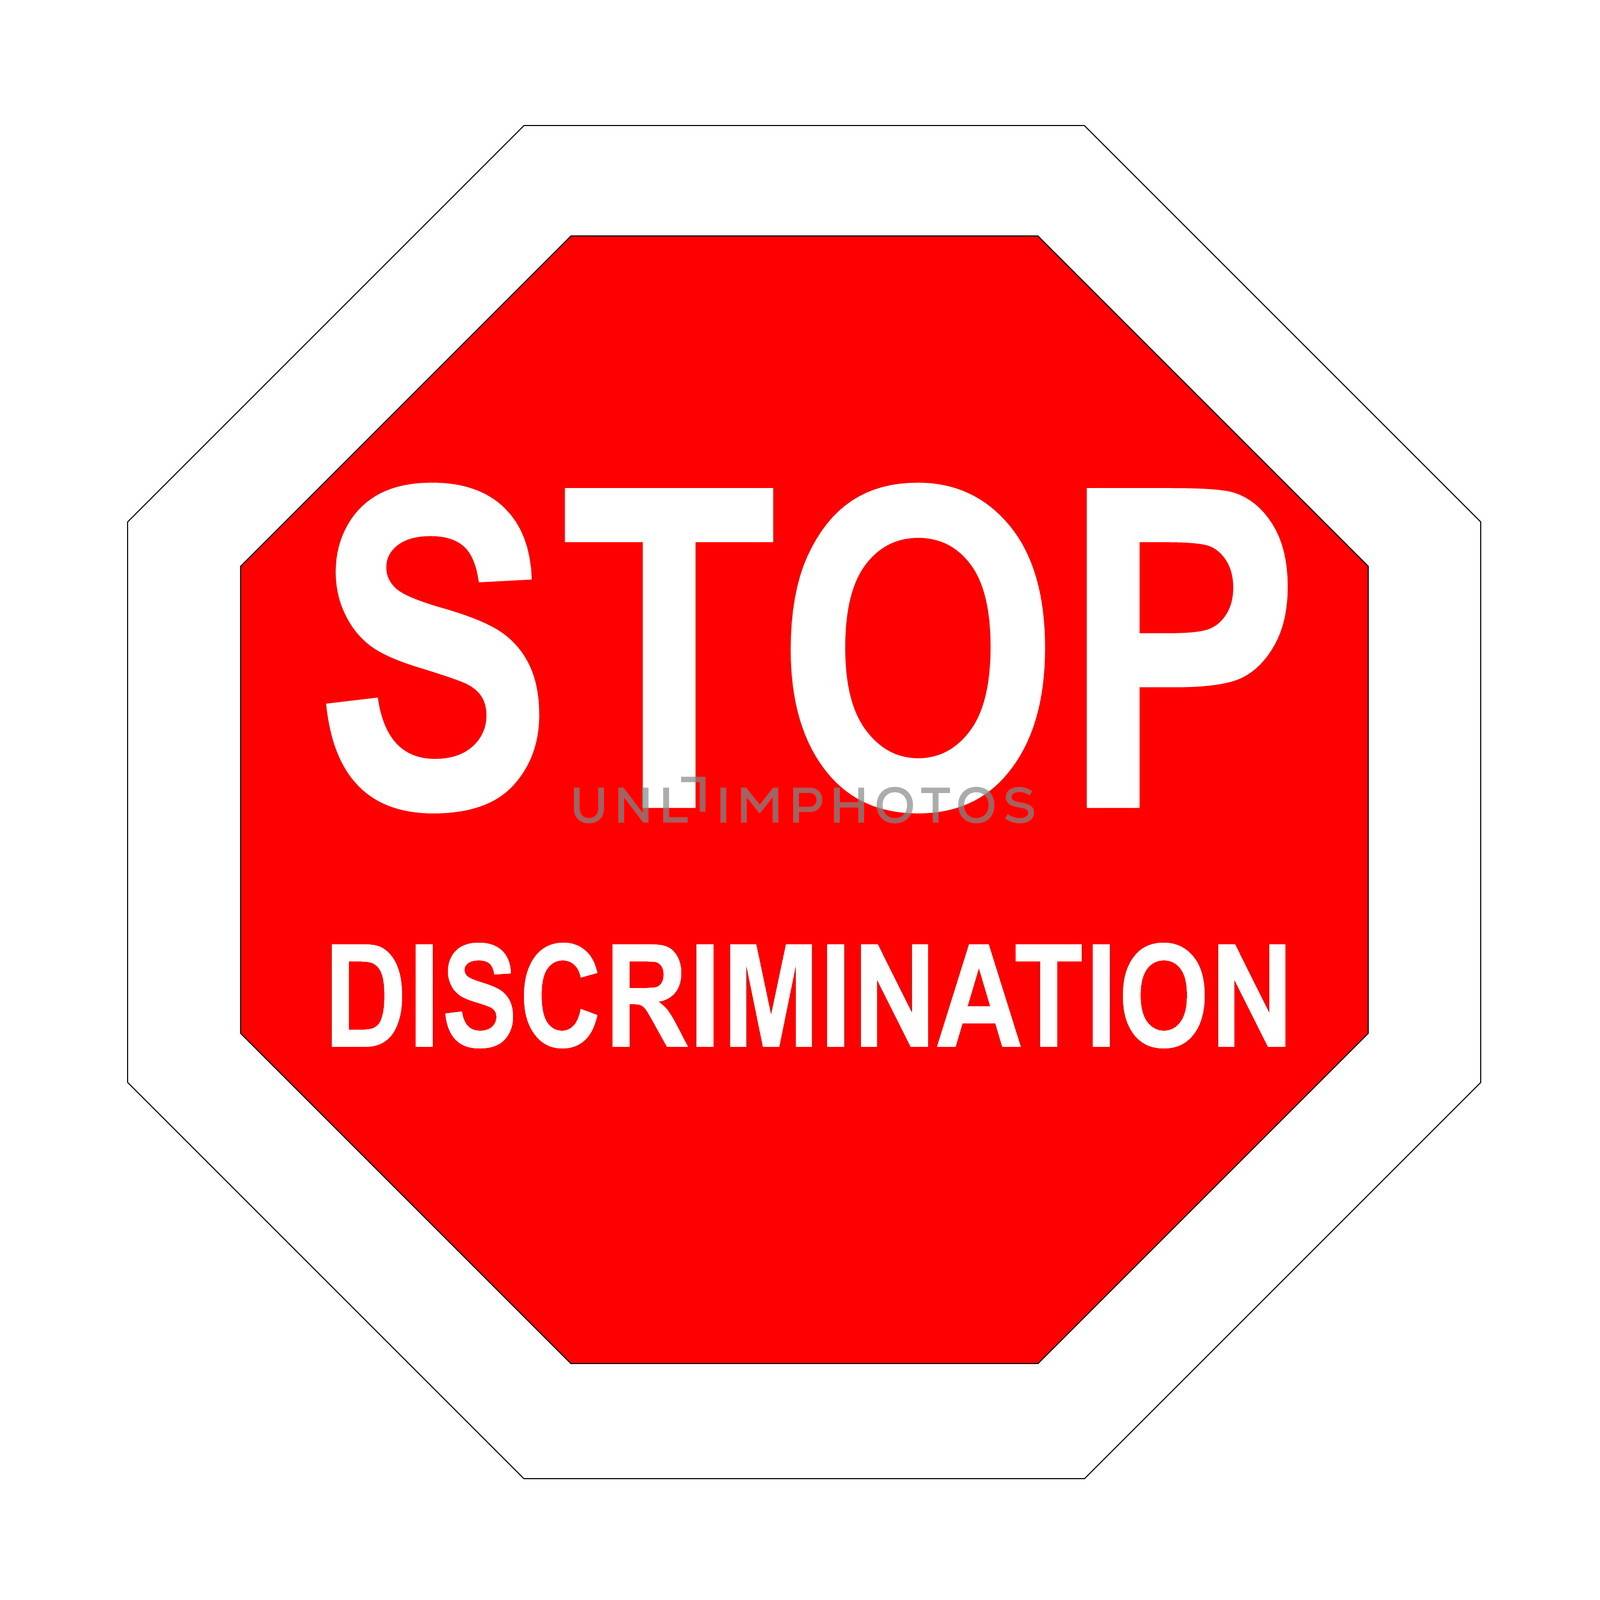 Stop discrimination by Elenaphotos21